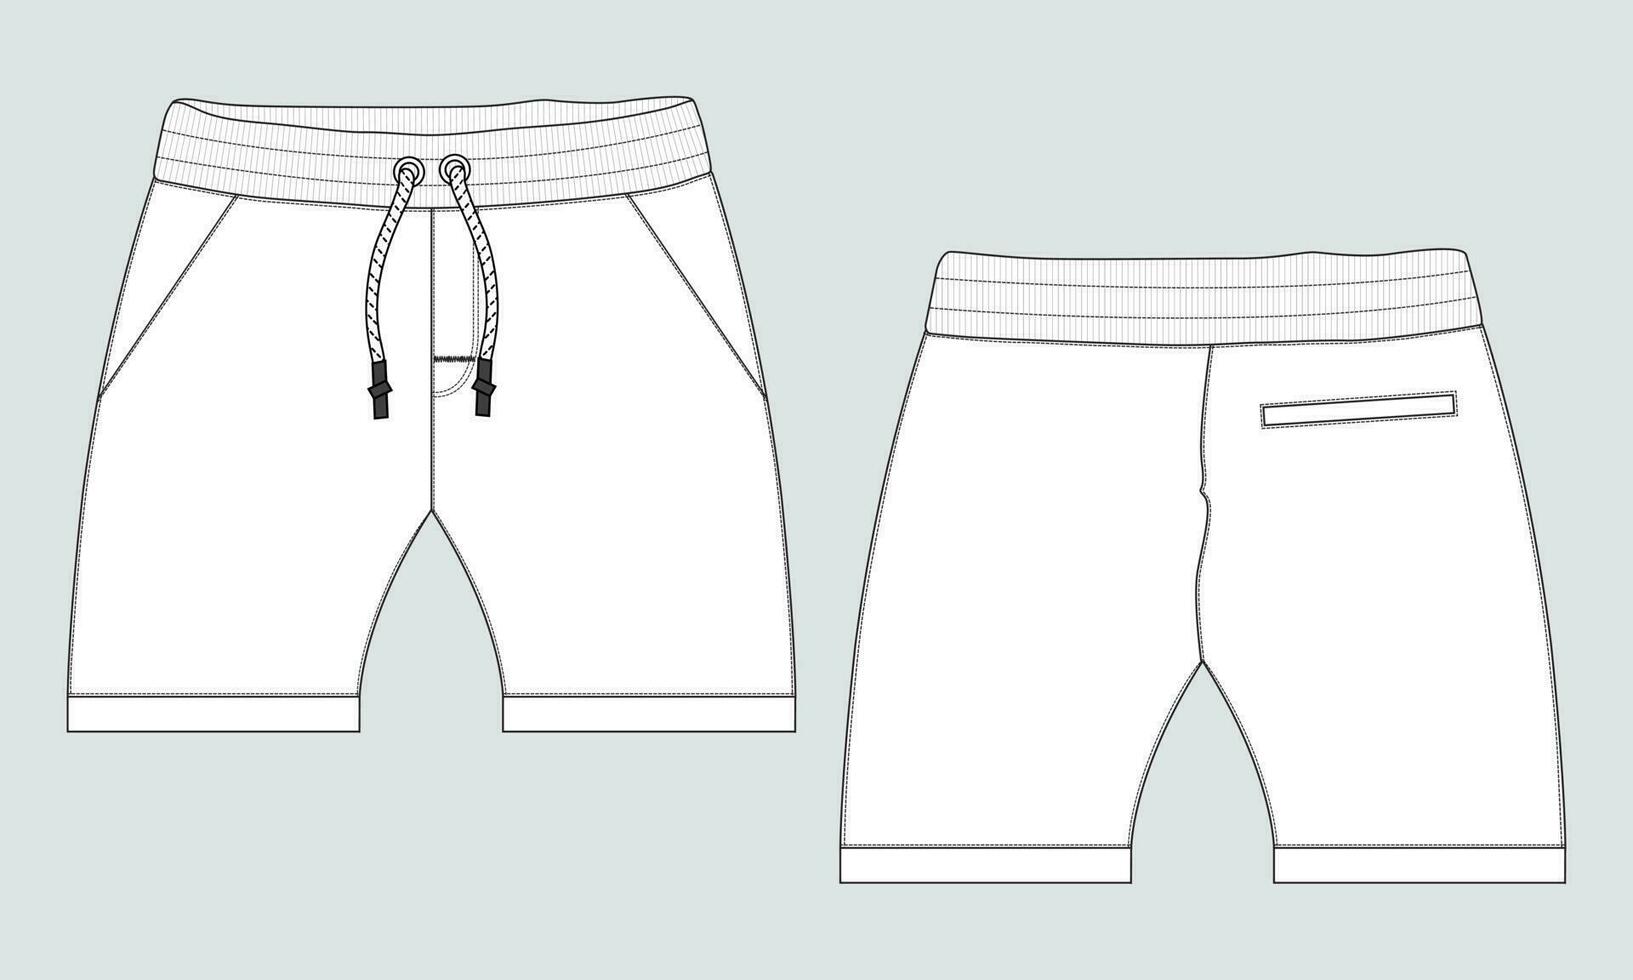 shorts flämta teknisk mode platt skiss teckning vektor illustration mall för bebis Pojkar.